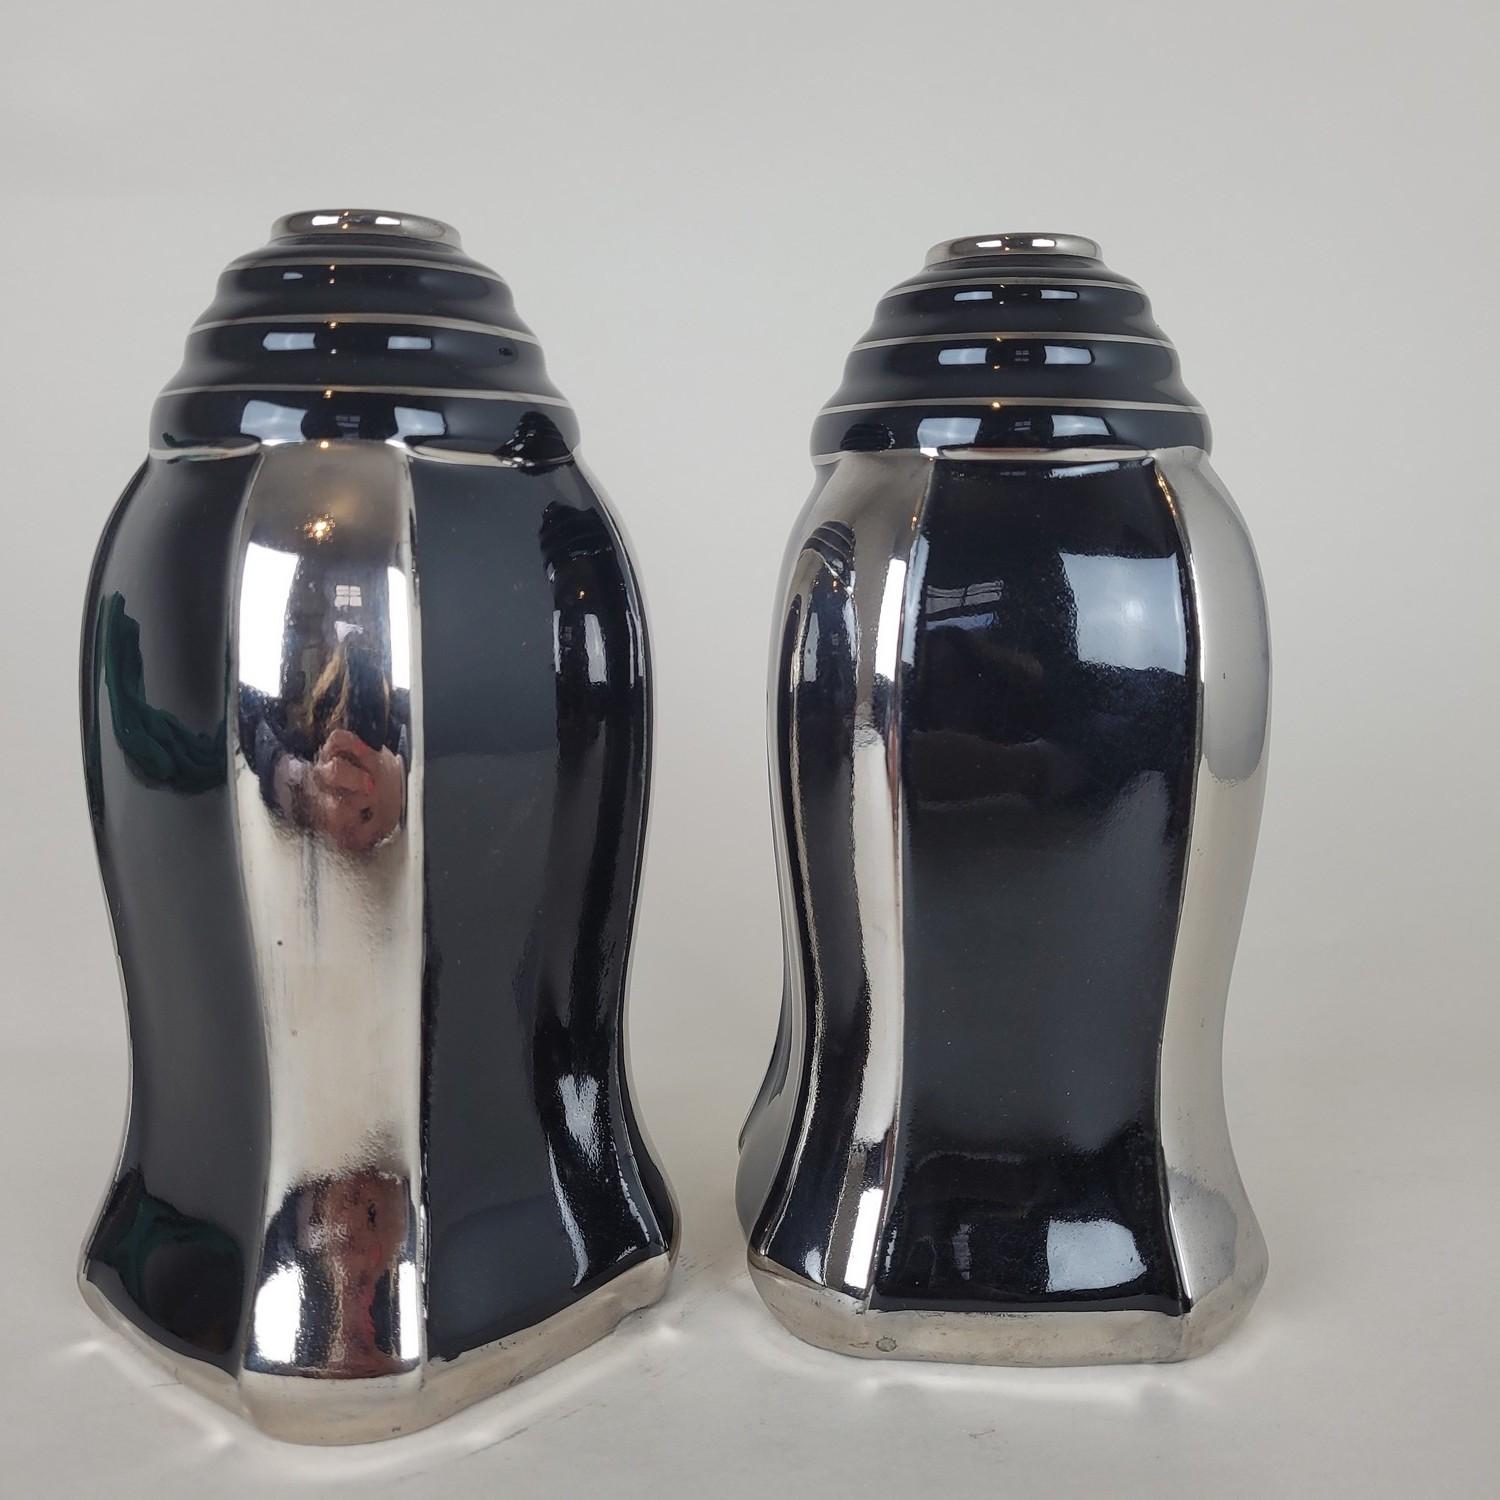 Paire de vases en céramique émaillée noire avec décoration en argent, art déco

Ces 2 vases portent la marque ODYV en dessous, avec le numéro 492

La marque ODYV est une collection d'objets art déco produits entre 1929 et 1939 par l'usine